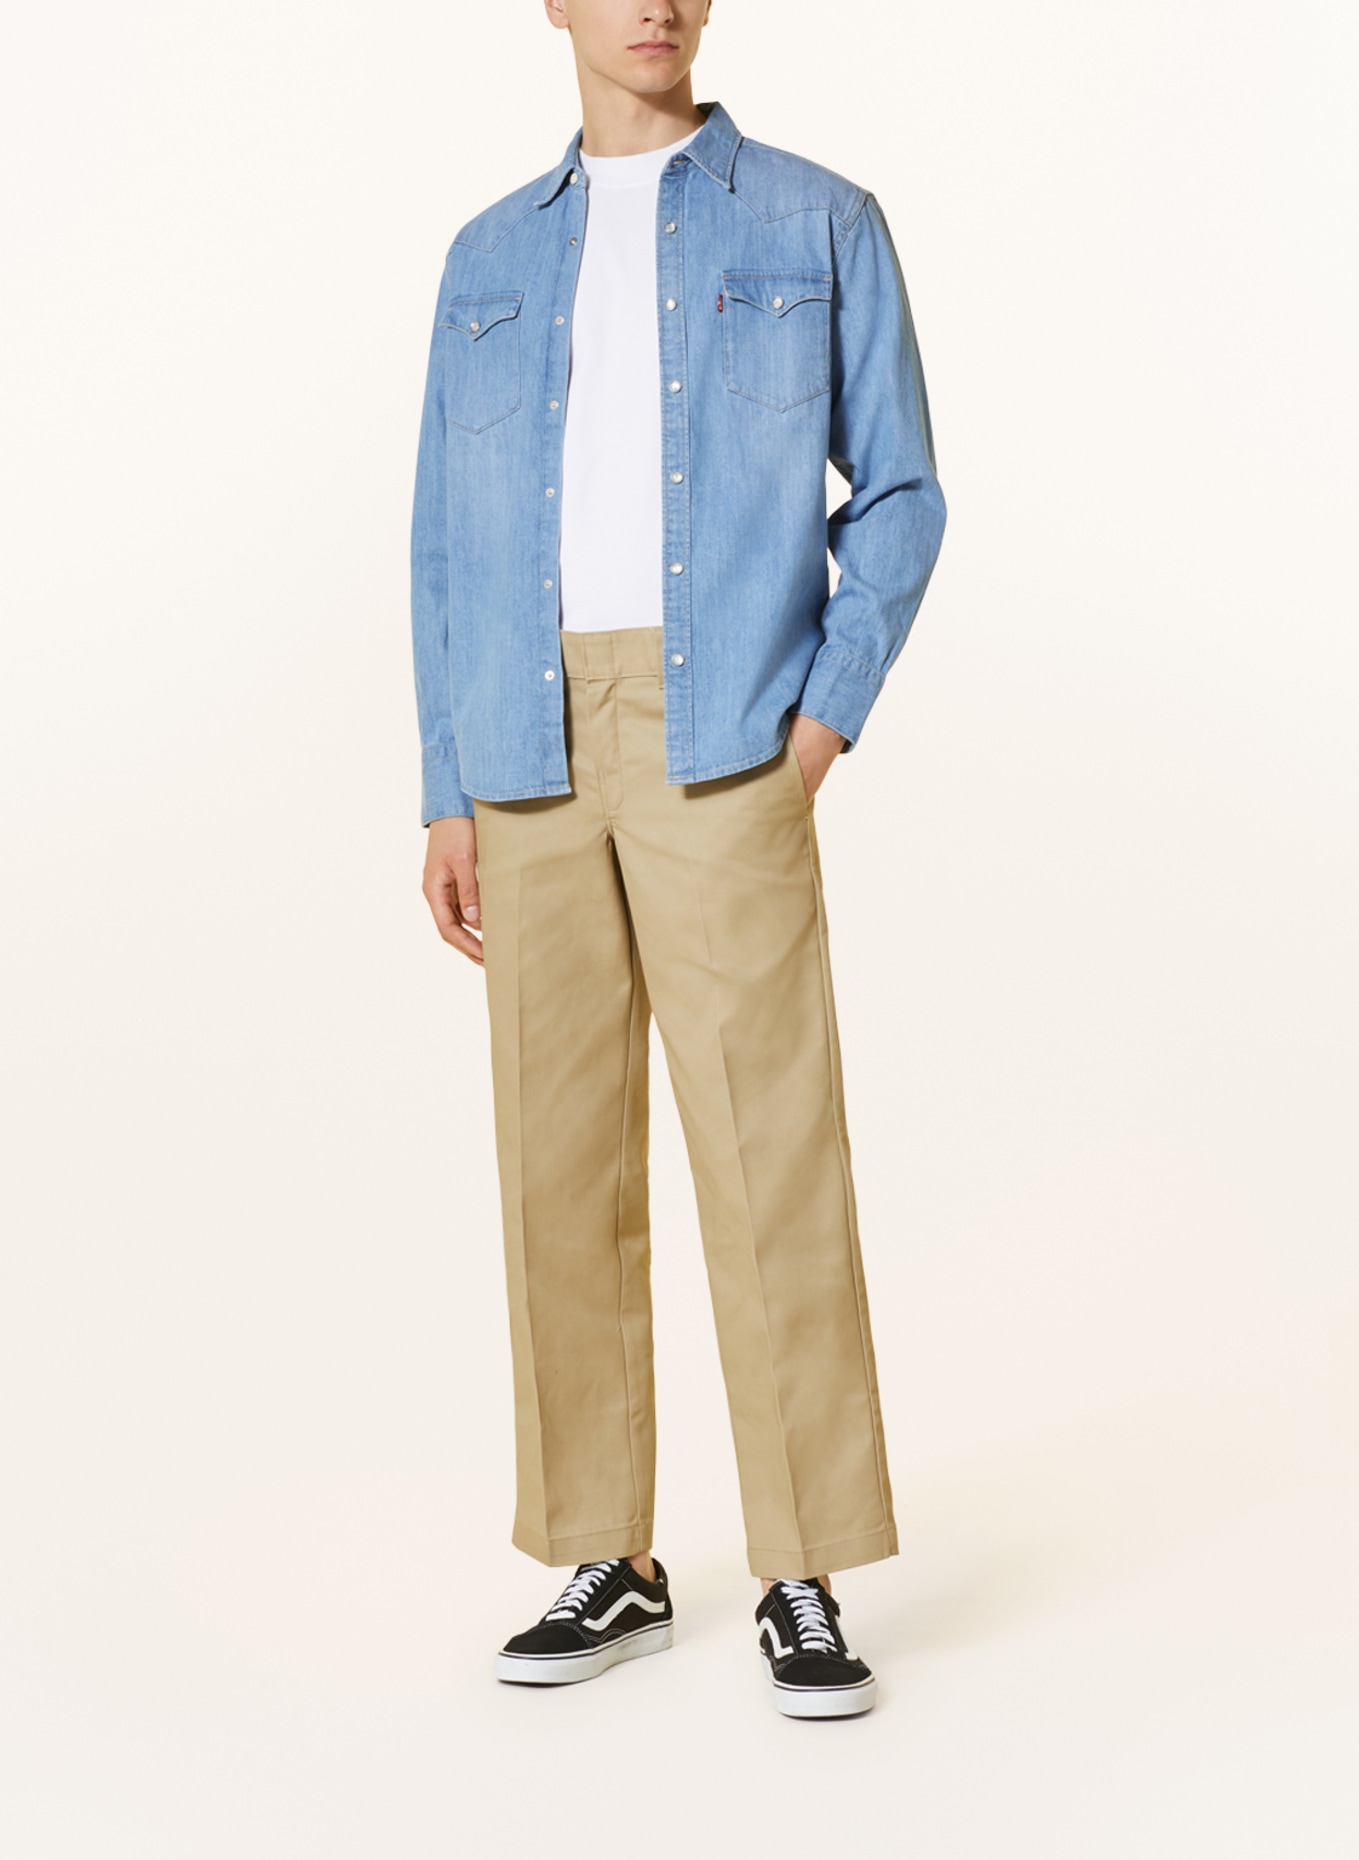 Levi's® Denim shirt standard fit, Color: 47 Light Indigo - Worn In (Image 2)